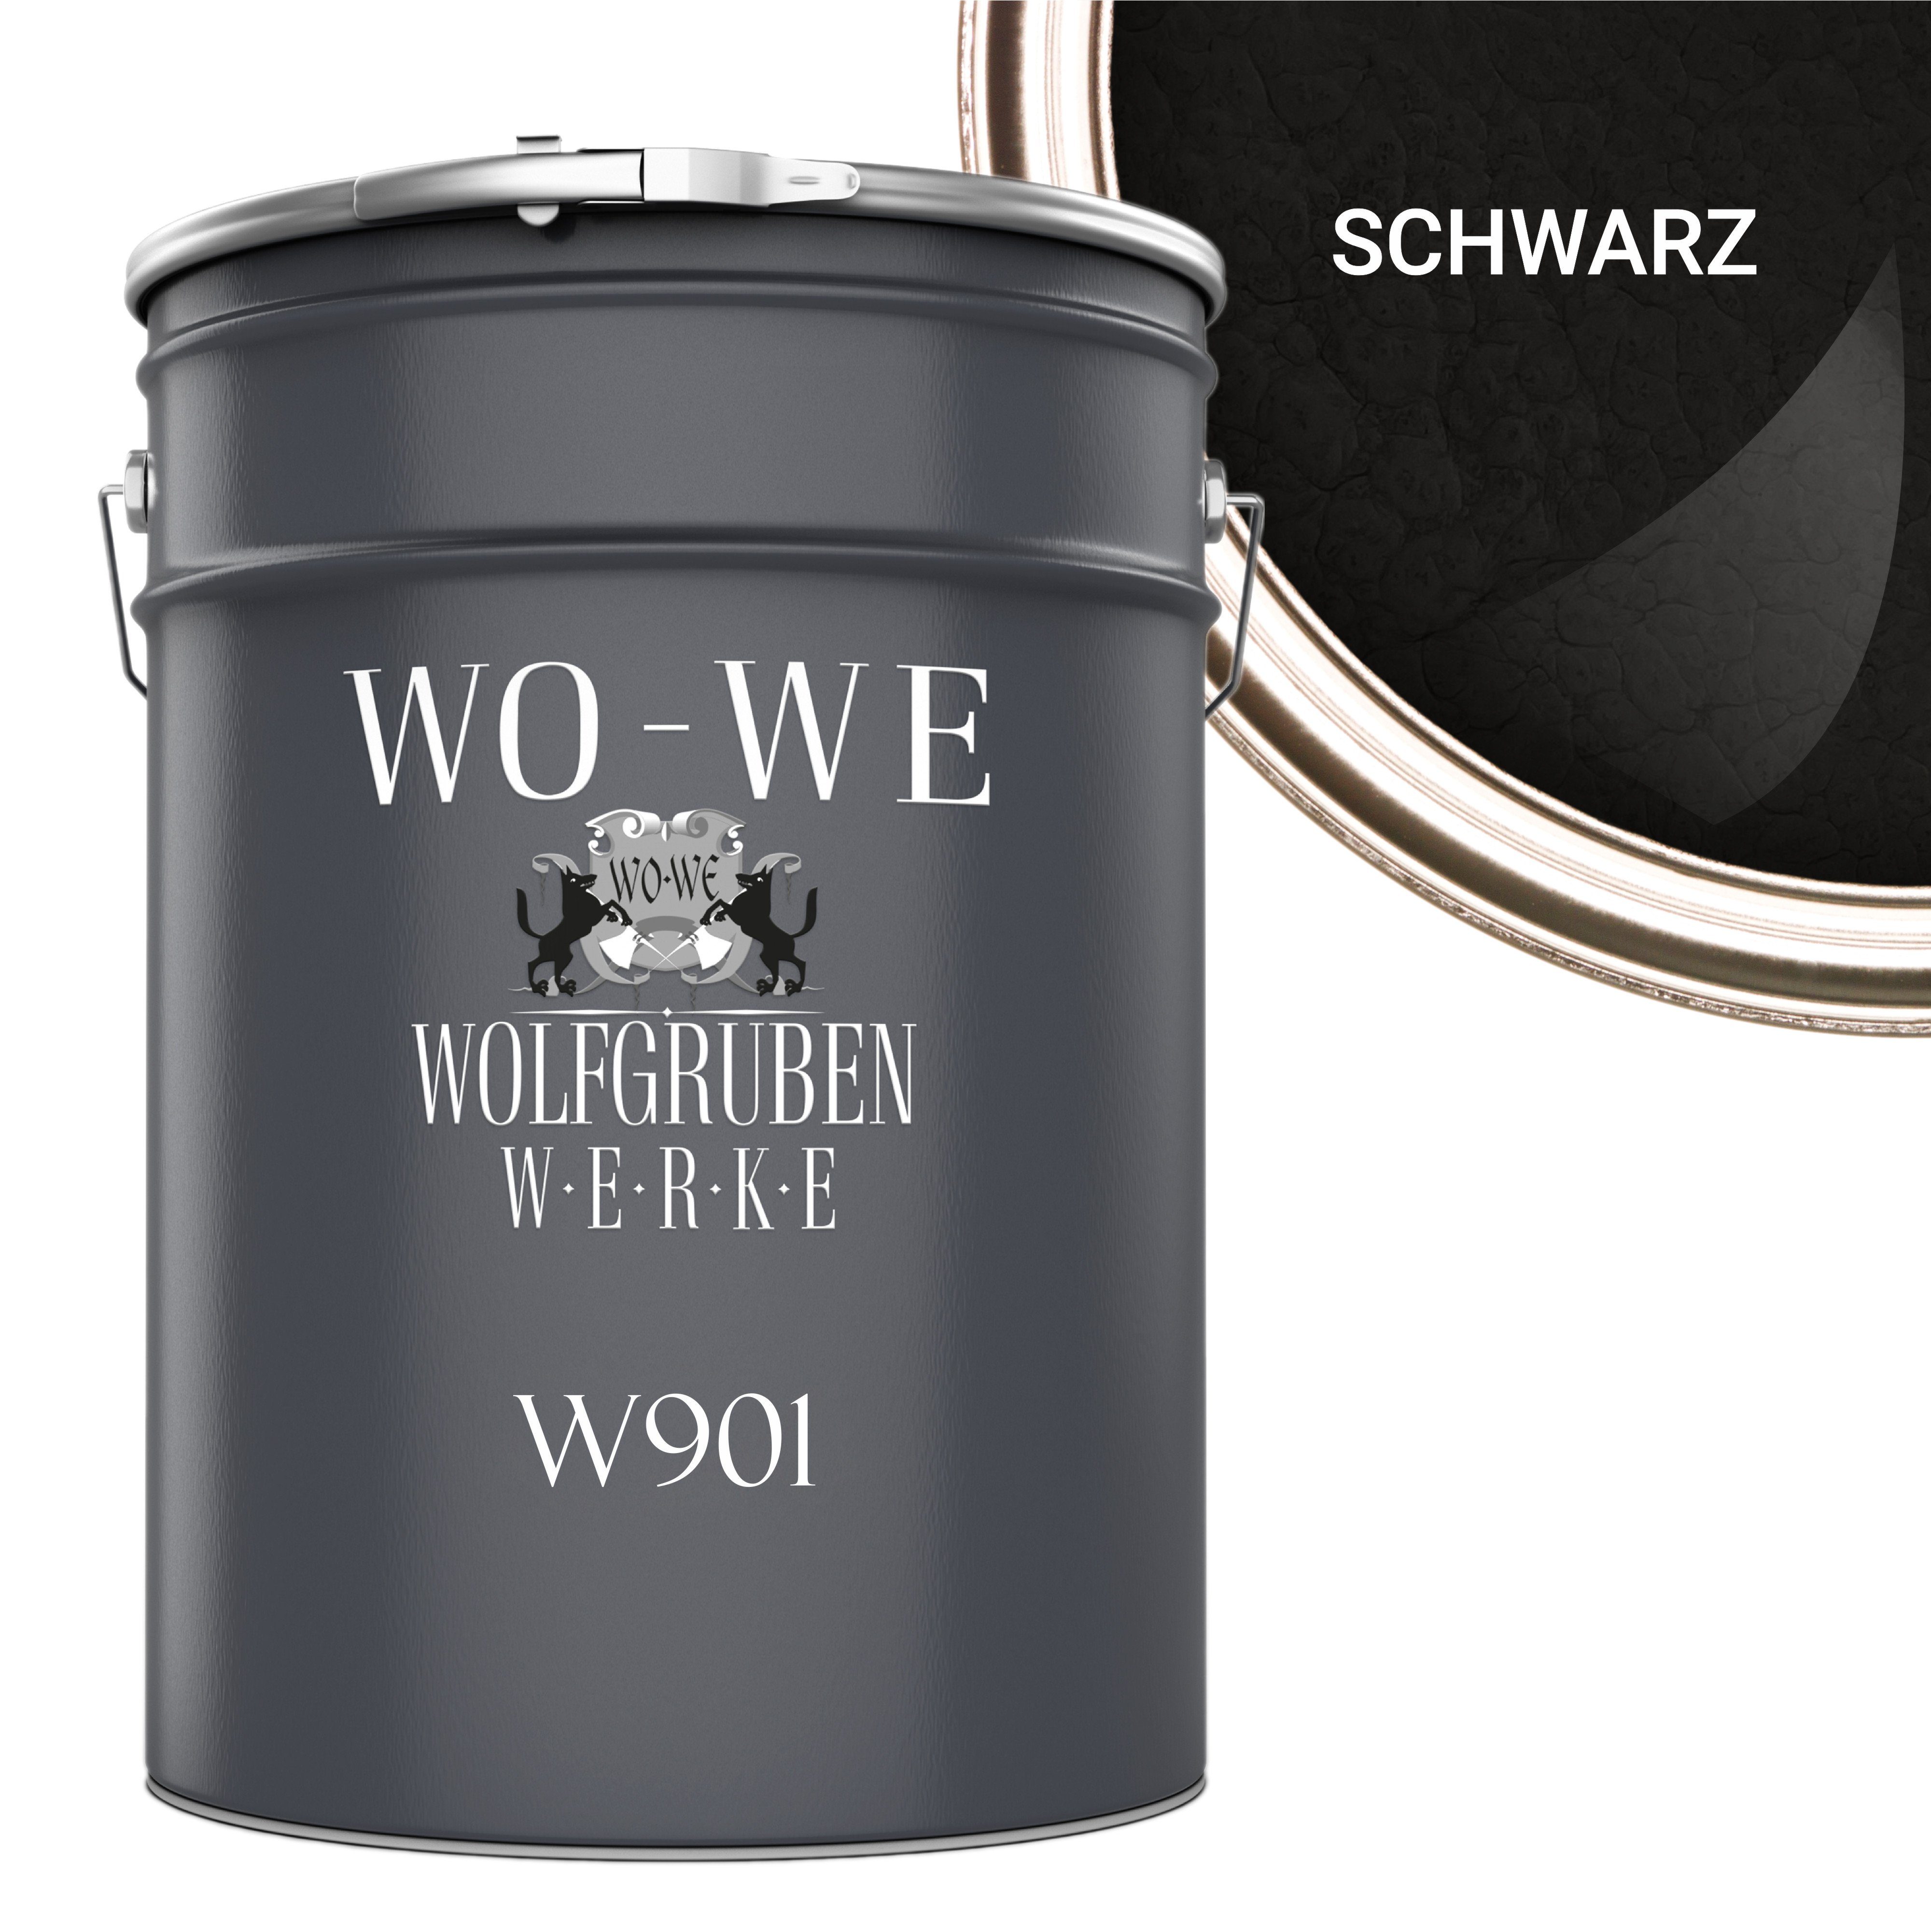 WO-WE Metallschutzlack Hammerschlaglack Hammerschlag Effektlack W901, 1-5L, Glänzend